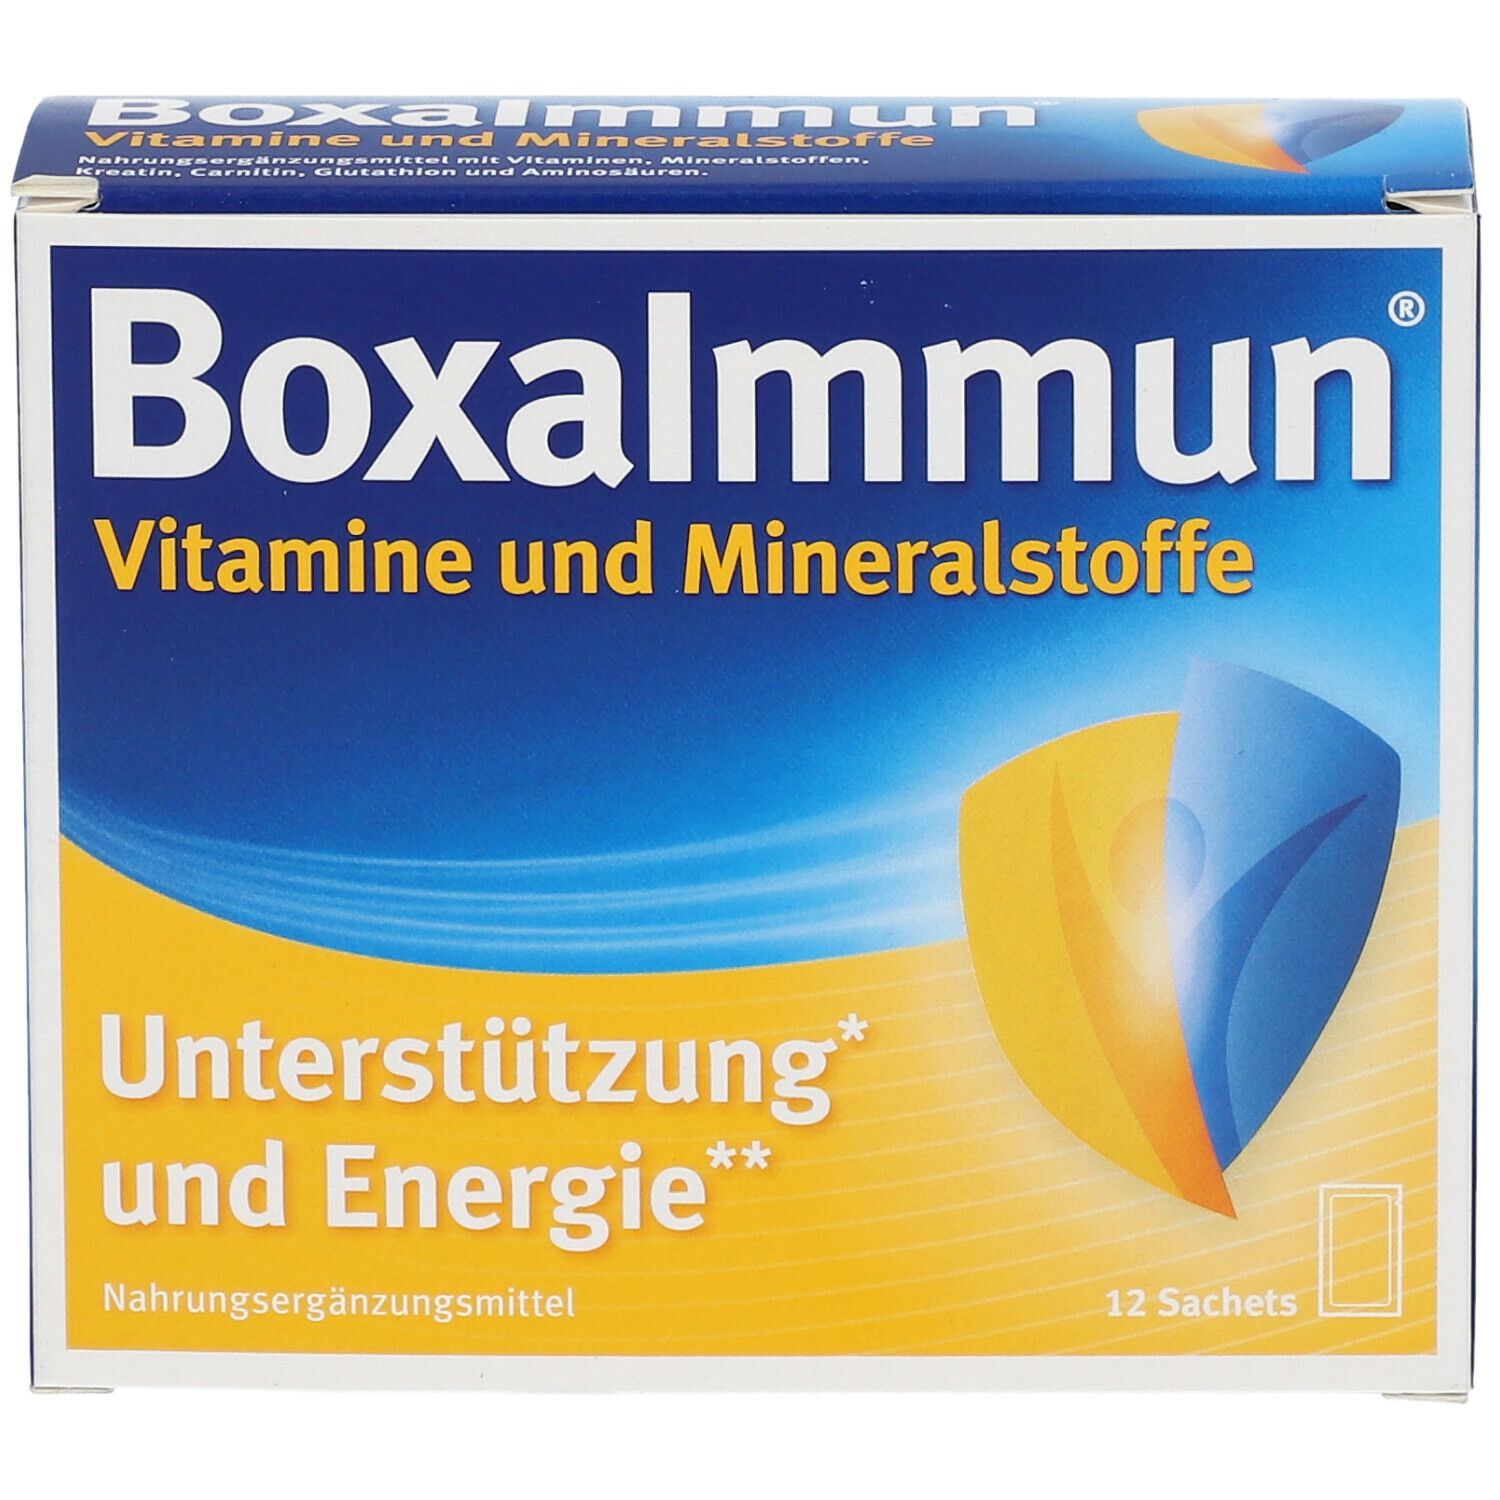 Boxalmmun Vitamine und Mineralstoffe